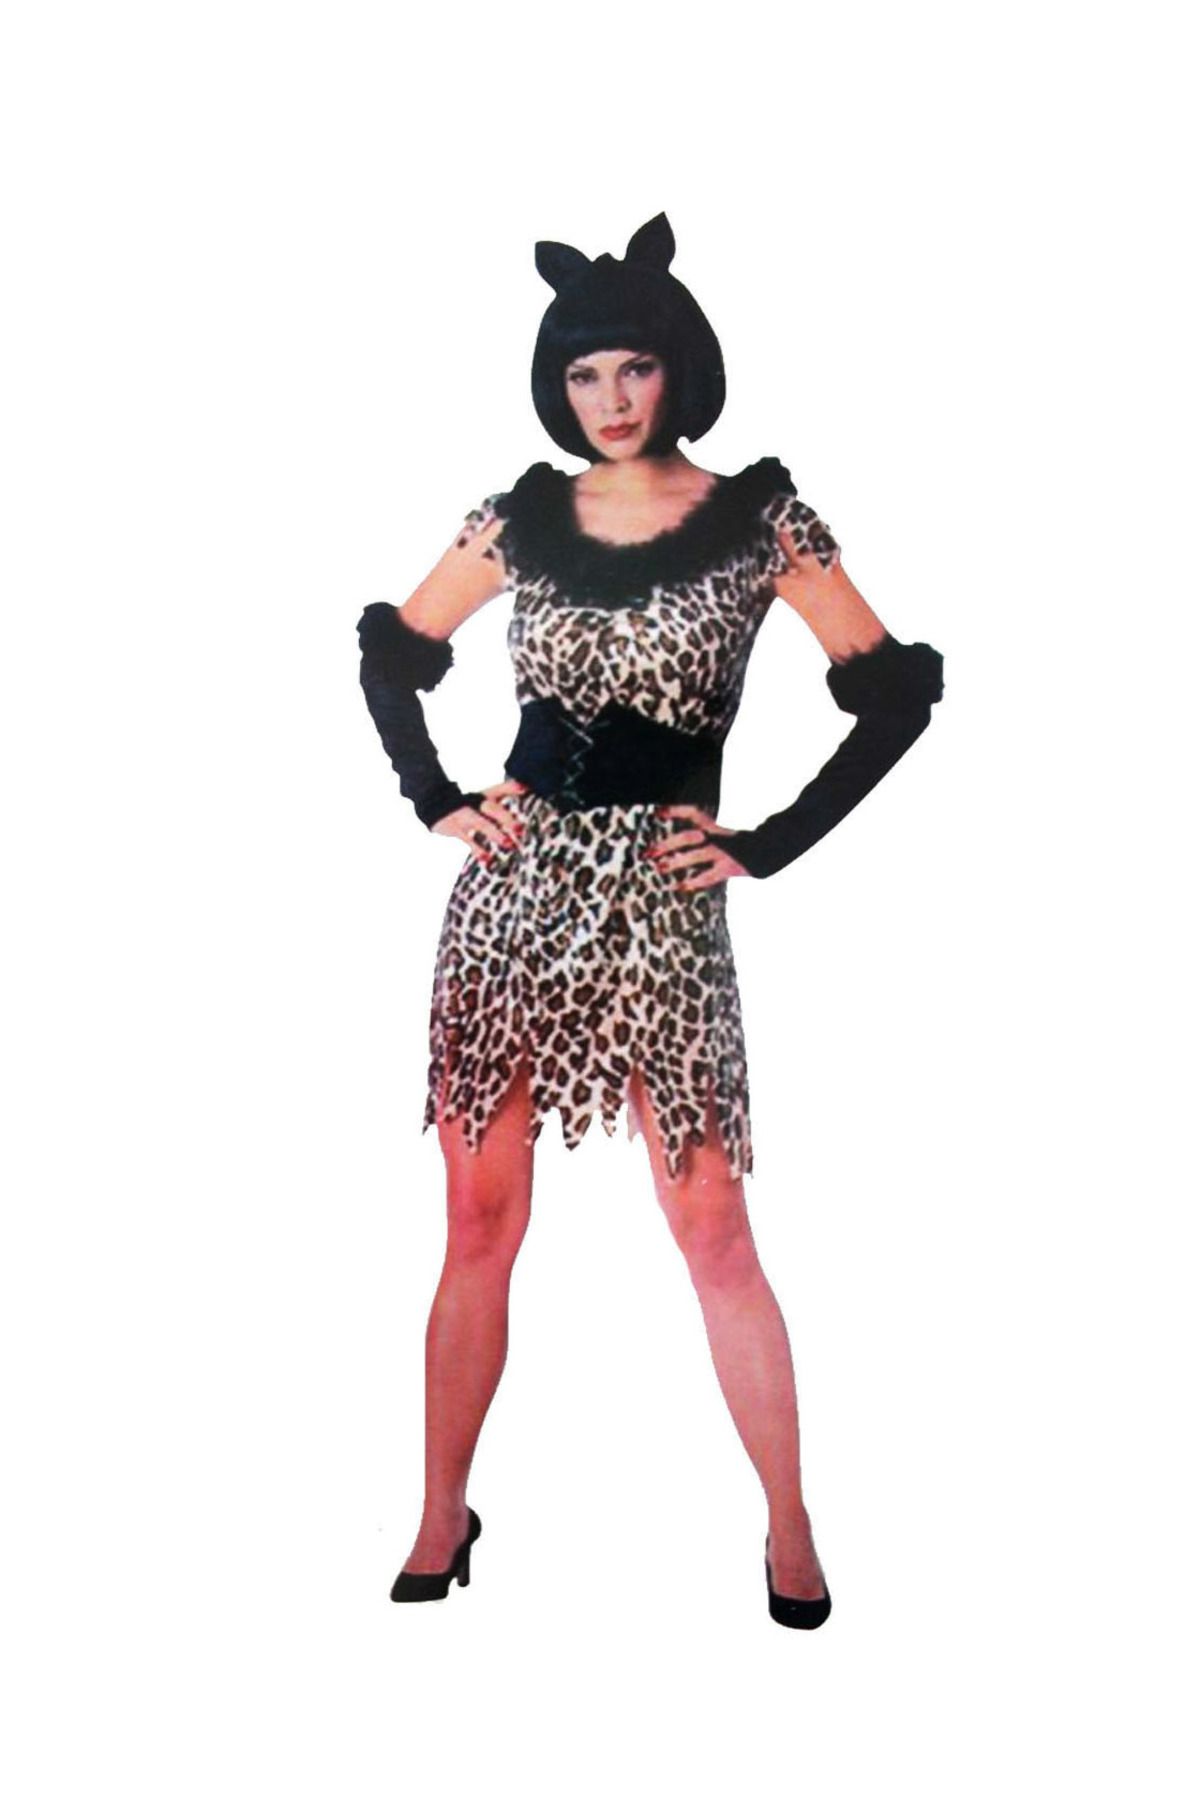 Skygo Yetişkin  Leopar Kostümü  - Kedi Kız Kostümü - Taş Devri Kostümü